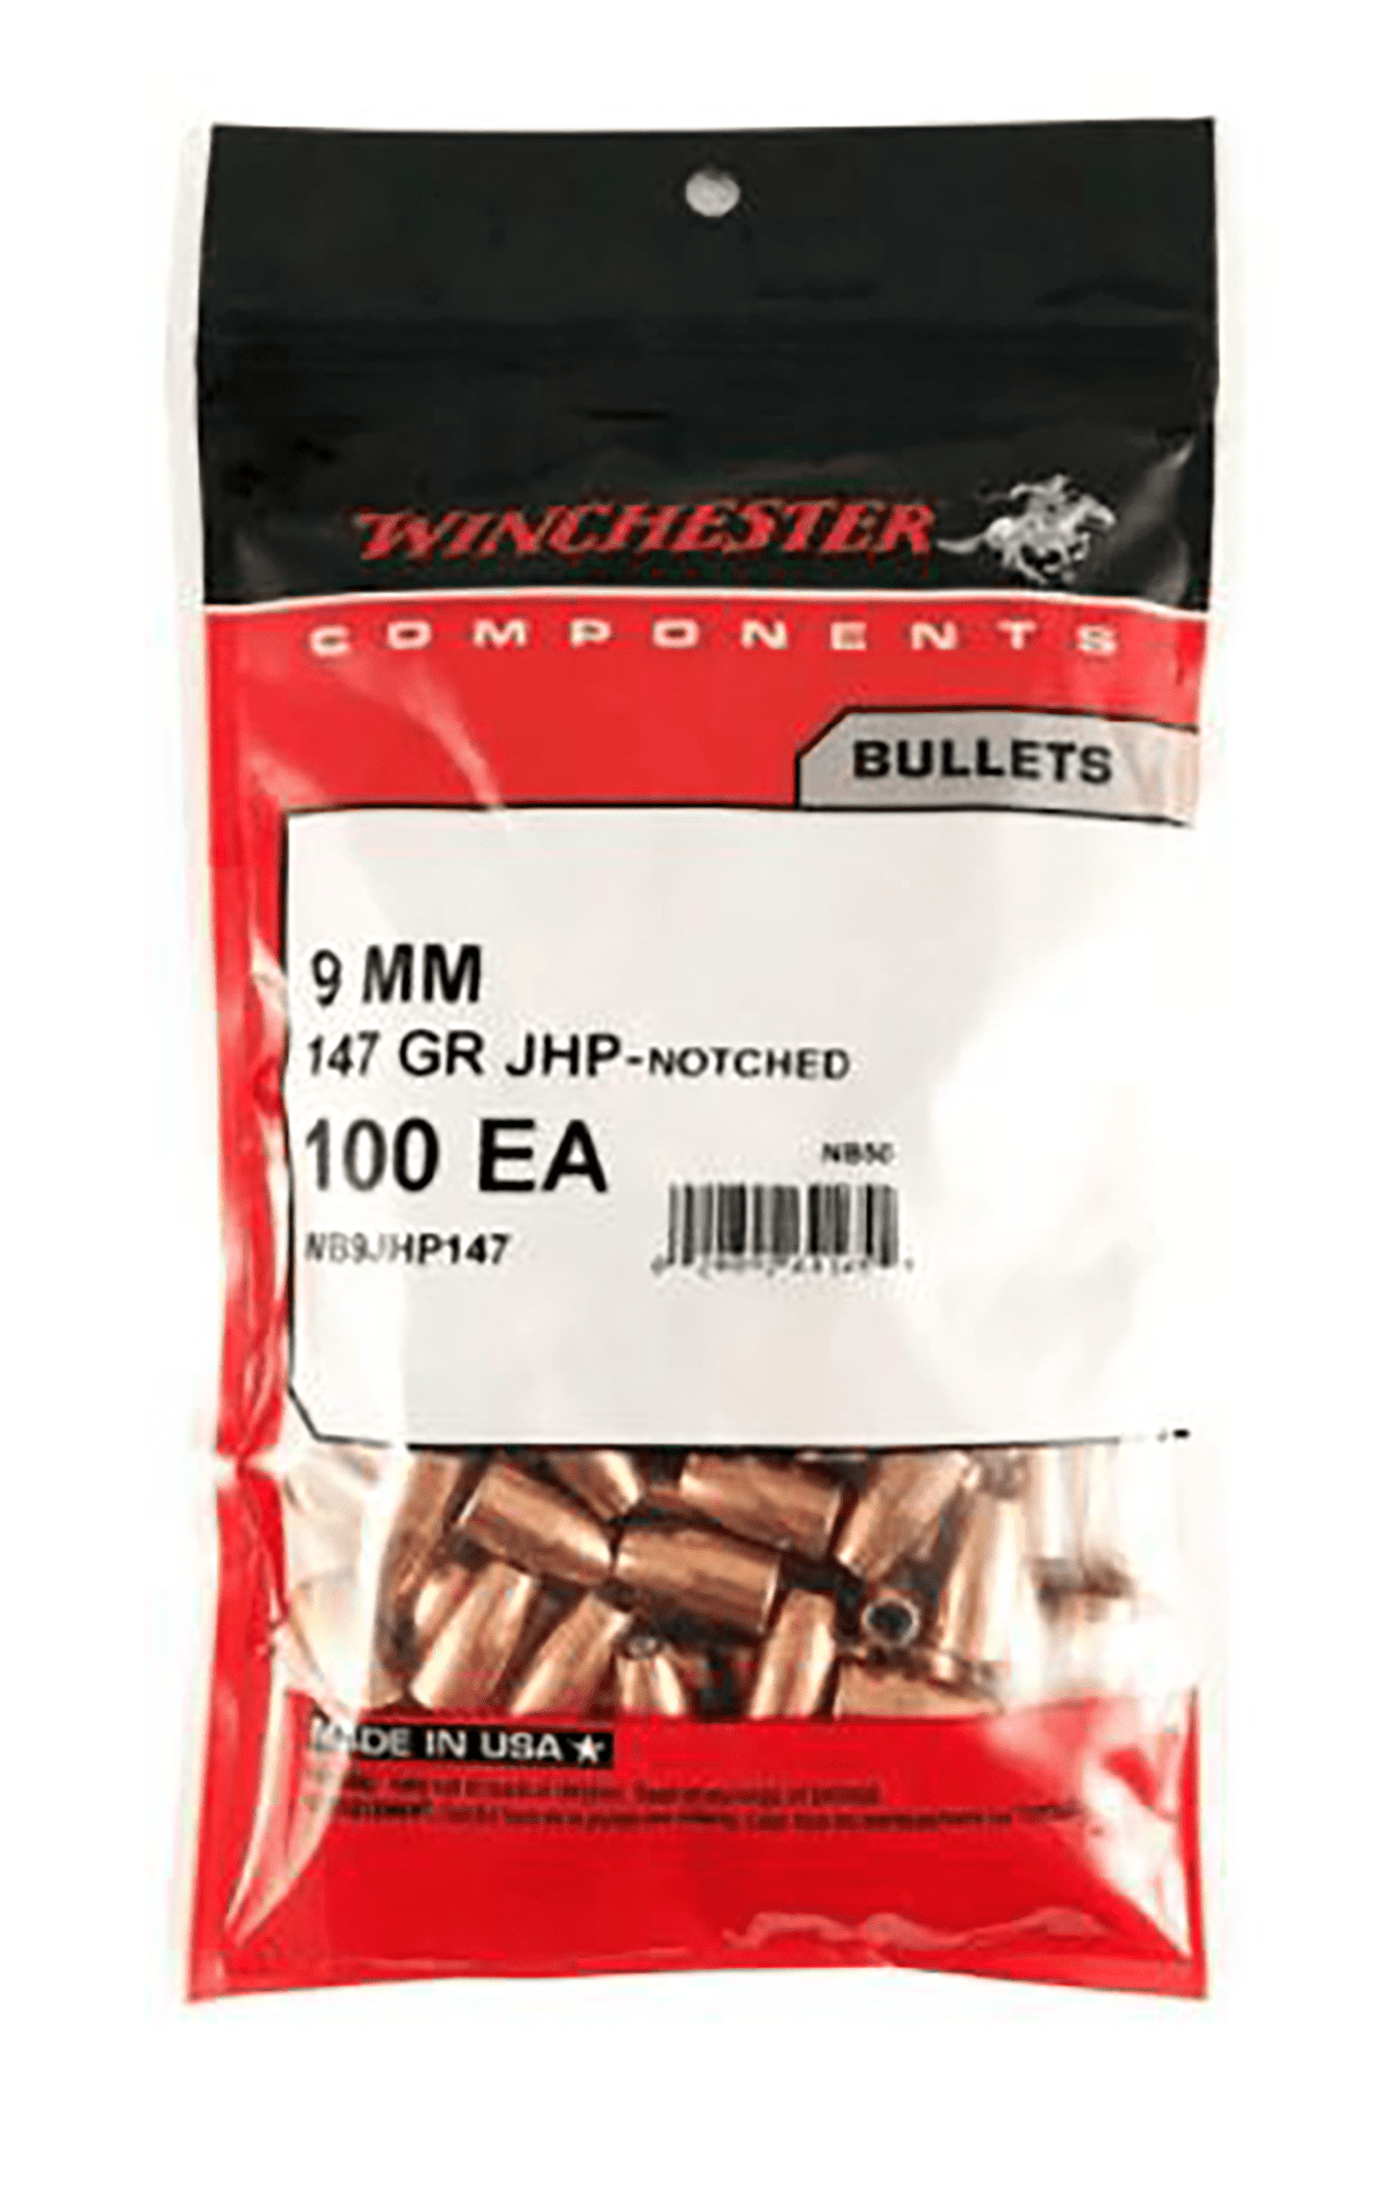 Winchester Ammo Winchester Ammo Centerfire Handgun, Win Wb9jhp147d Bul 9mm   147 Jhp         500/4 Reloading